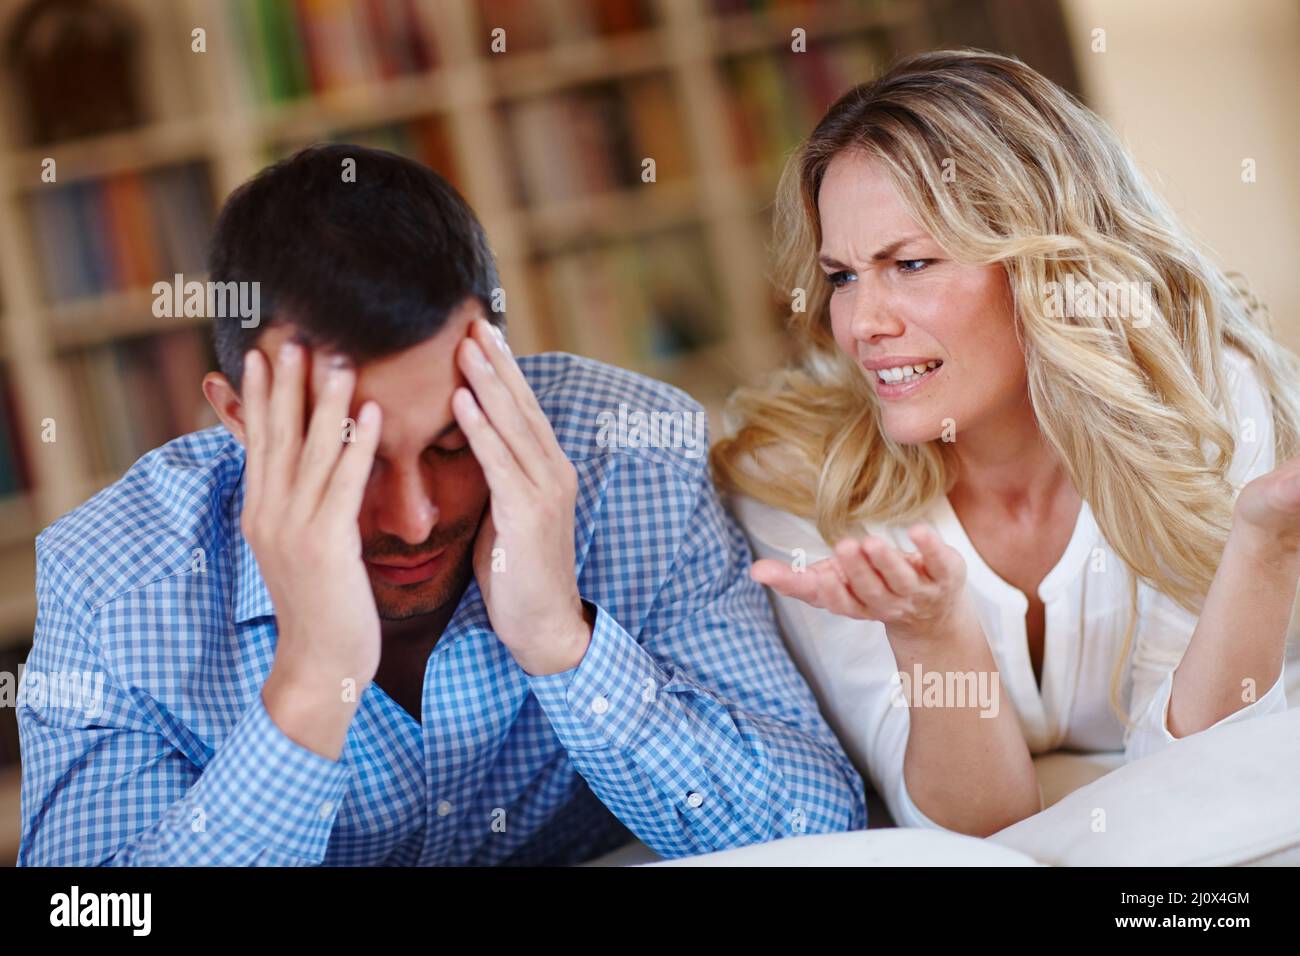 Warum verstehen Sie das nicht? Aufnahme eines jungen Paares, das während des Sitzens zu Hause eine Meinungsverschiedenheit hat. Stockfoto